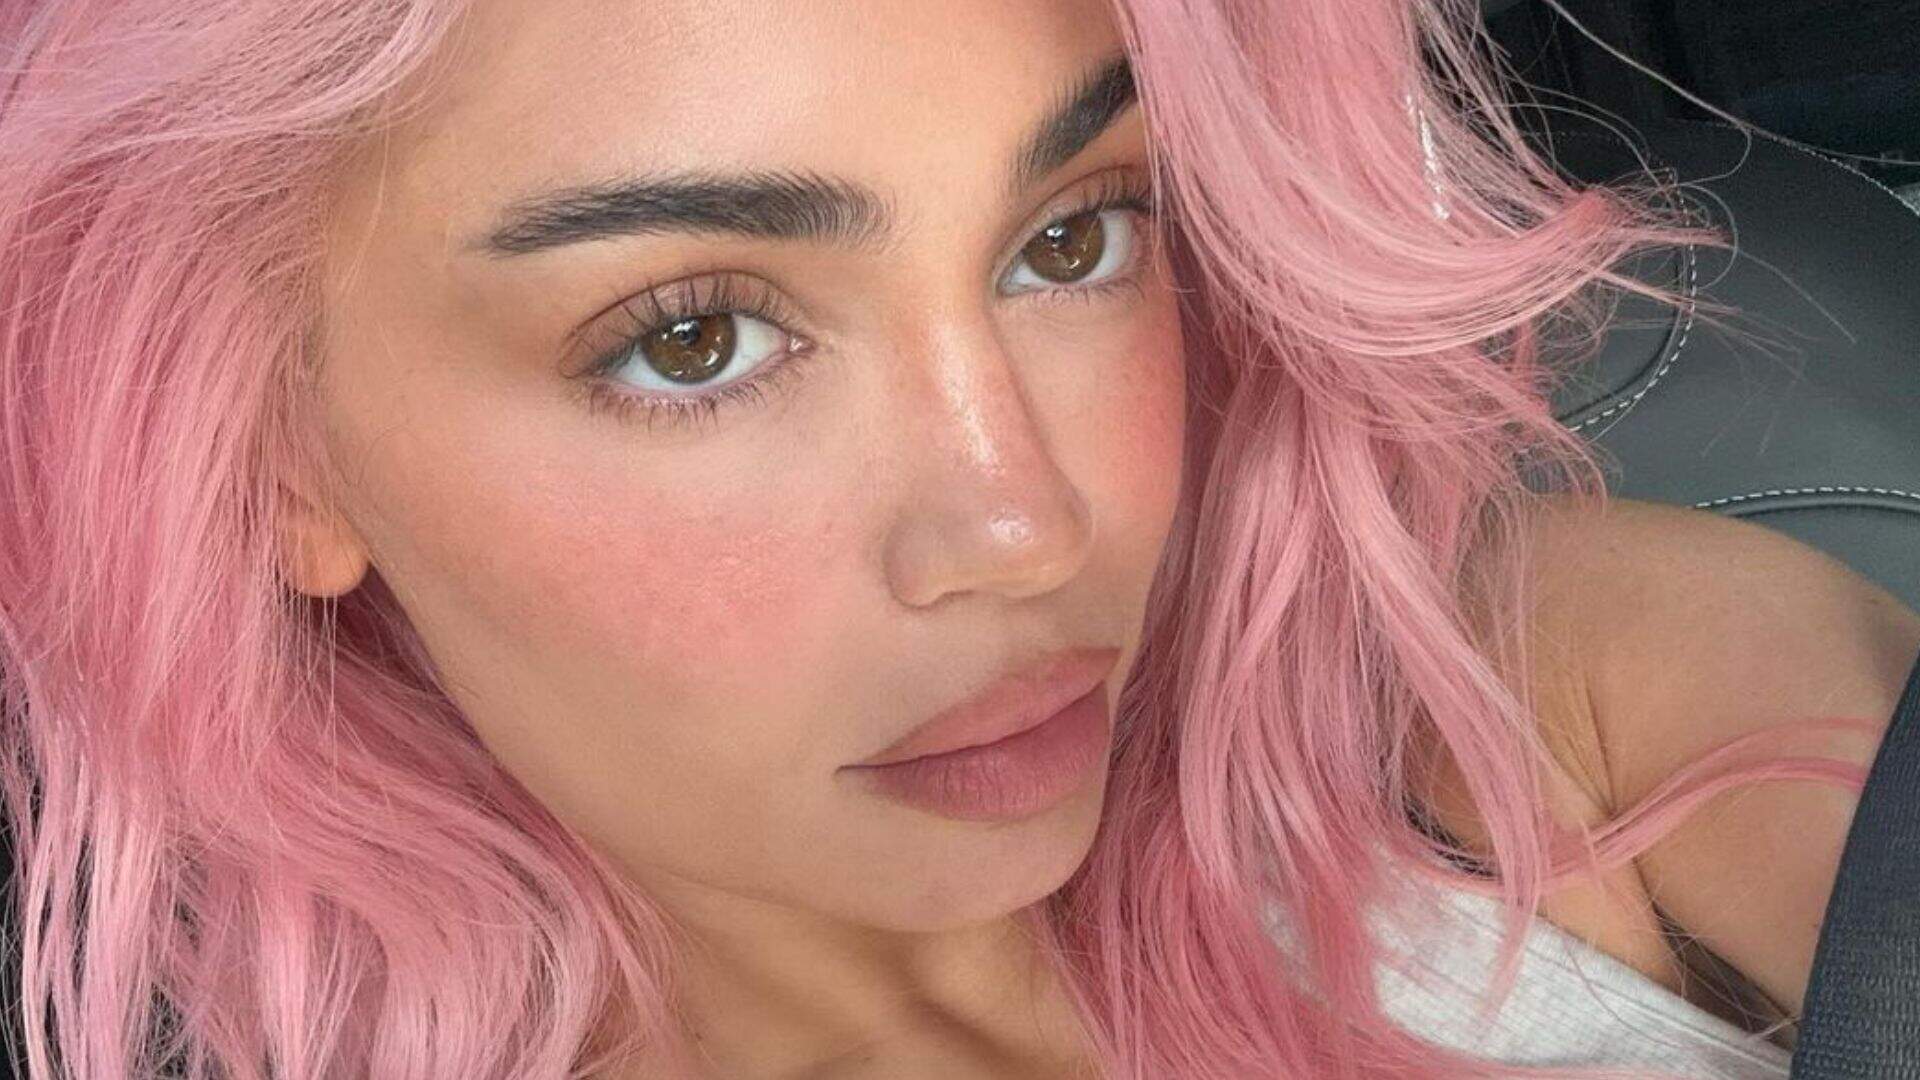 Kylie Jenner retorna com estilo usado na adolescência e surge de cabelo rosa: “Ela está de volta” - Metropolitana FM